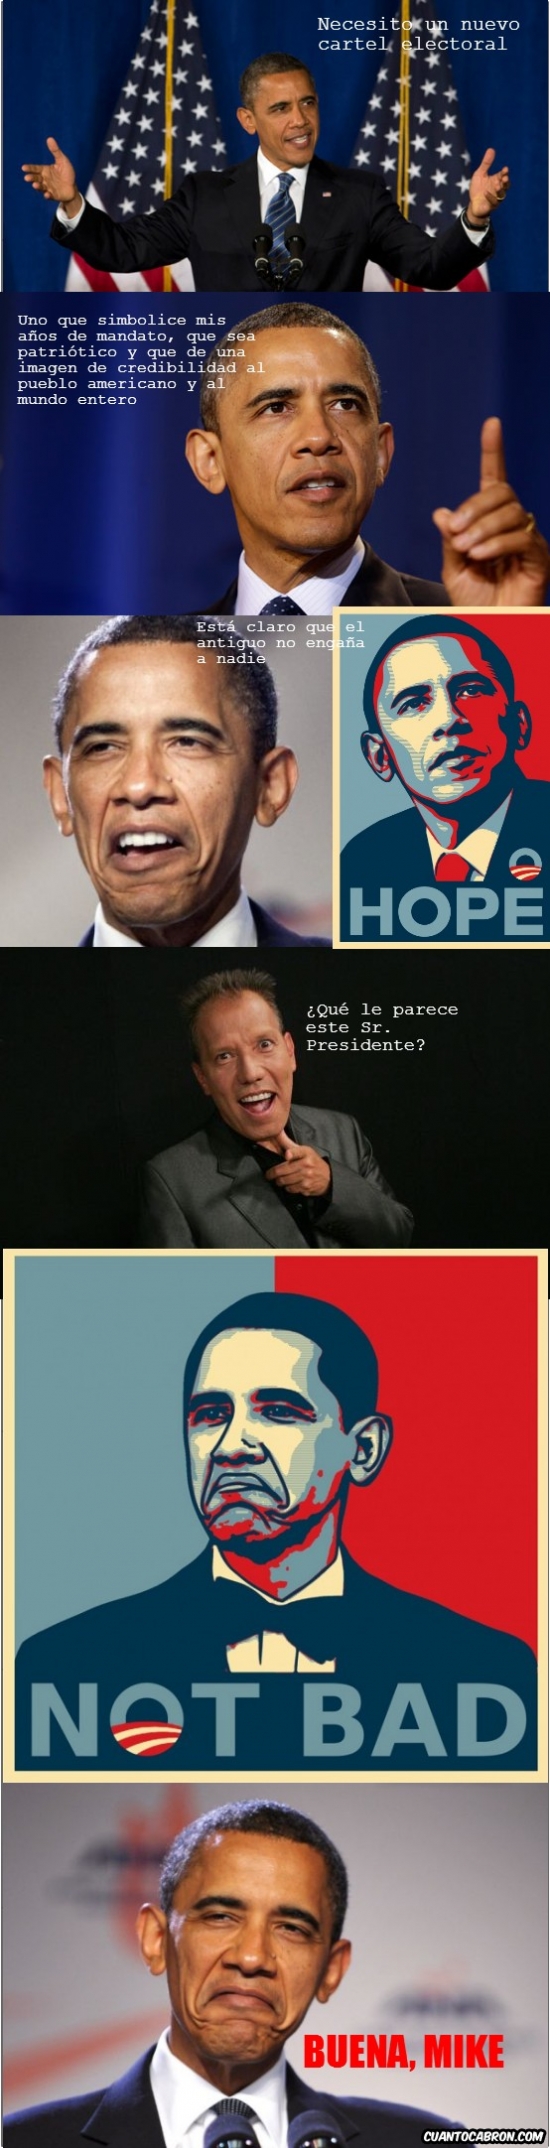 Not_bad - Obama se presenta a las elecciones con un nuevo cartel electoral